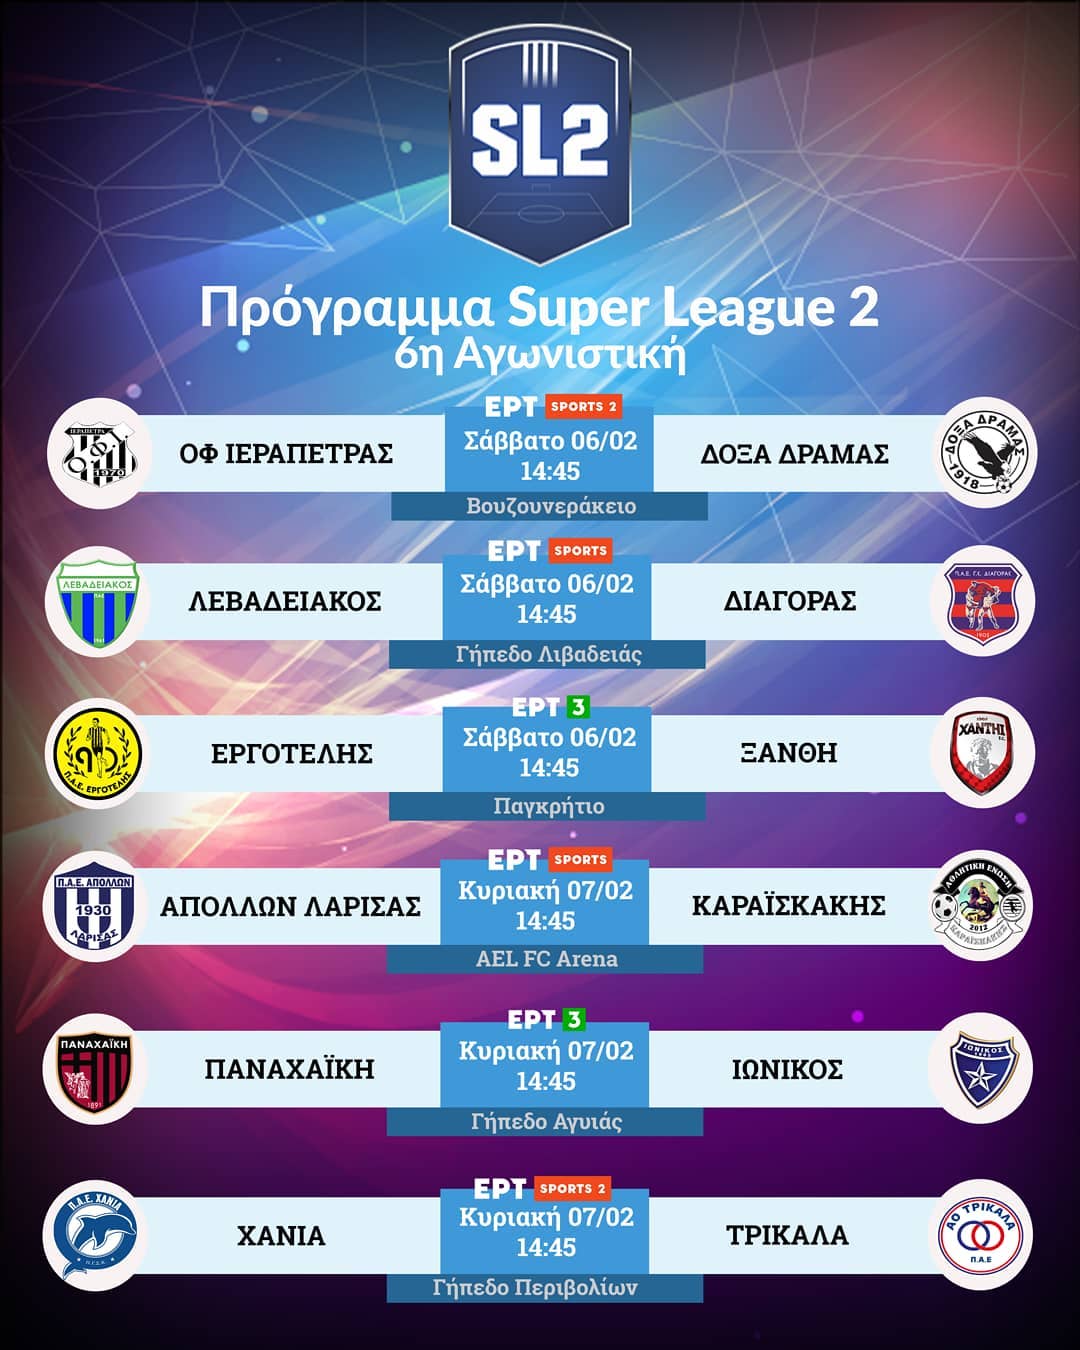 Οι διαιτητές της Super League 2